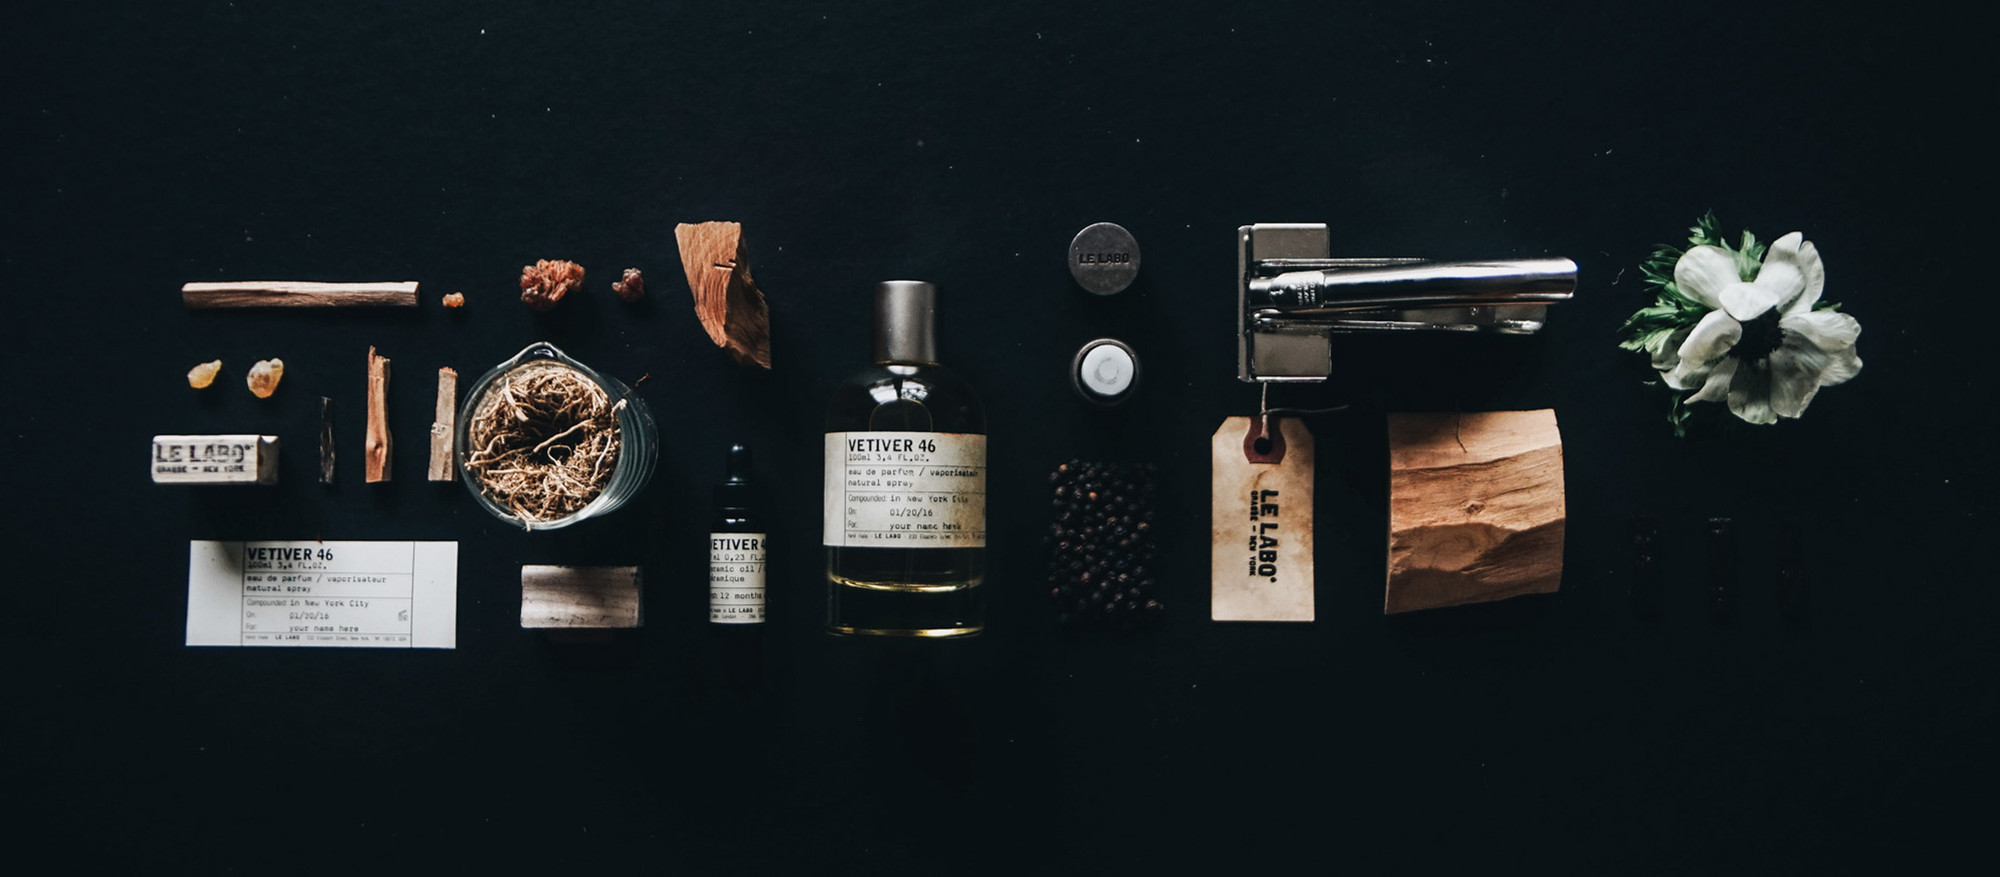 VETIVER 46 | Le Labo Fragrances